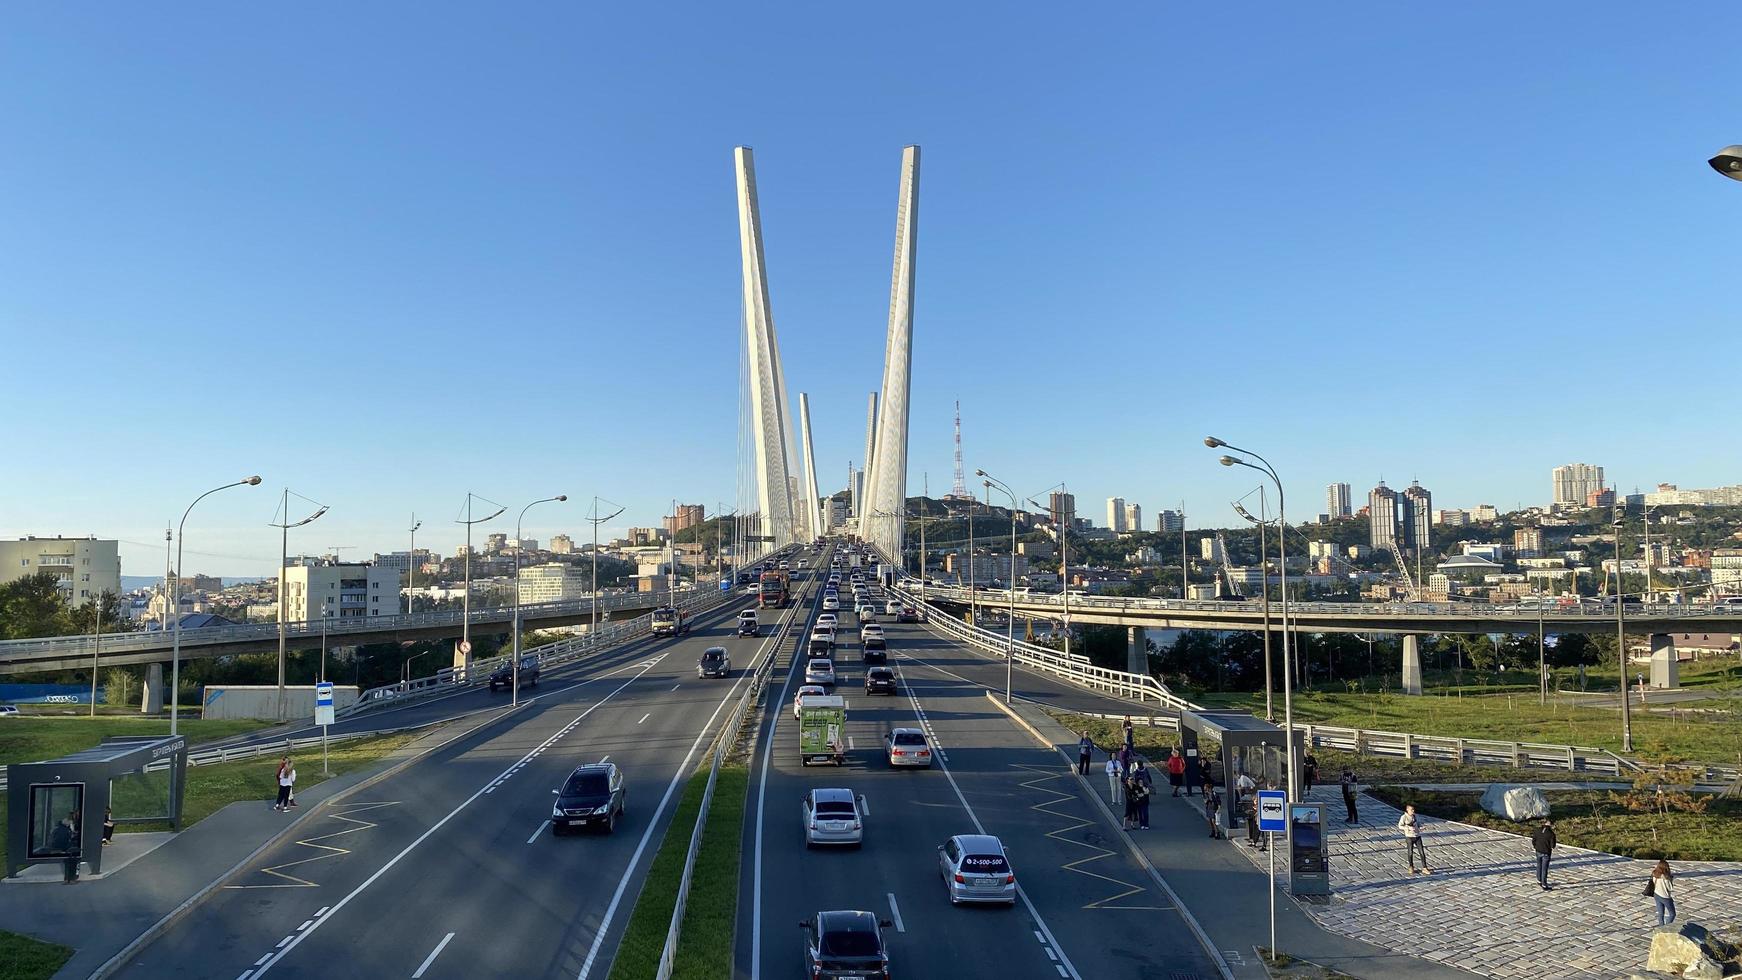 vladivostok, rússia - 20 de setembro de 2022 paisagem urbana com vista para a ponte dourada foto